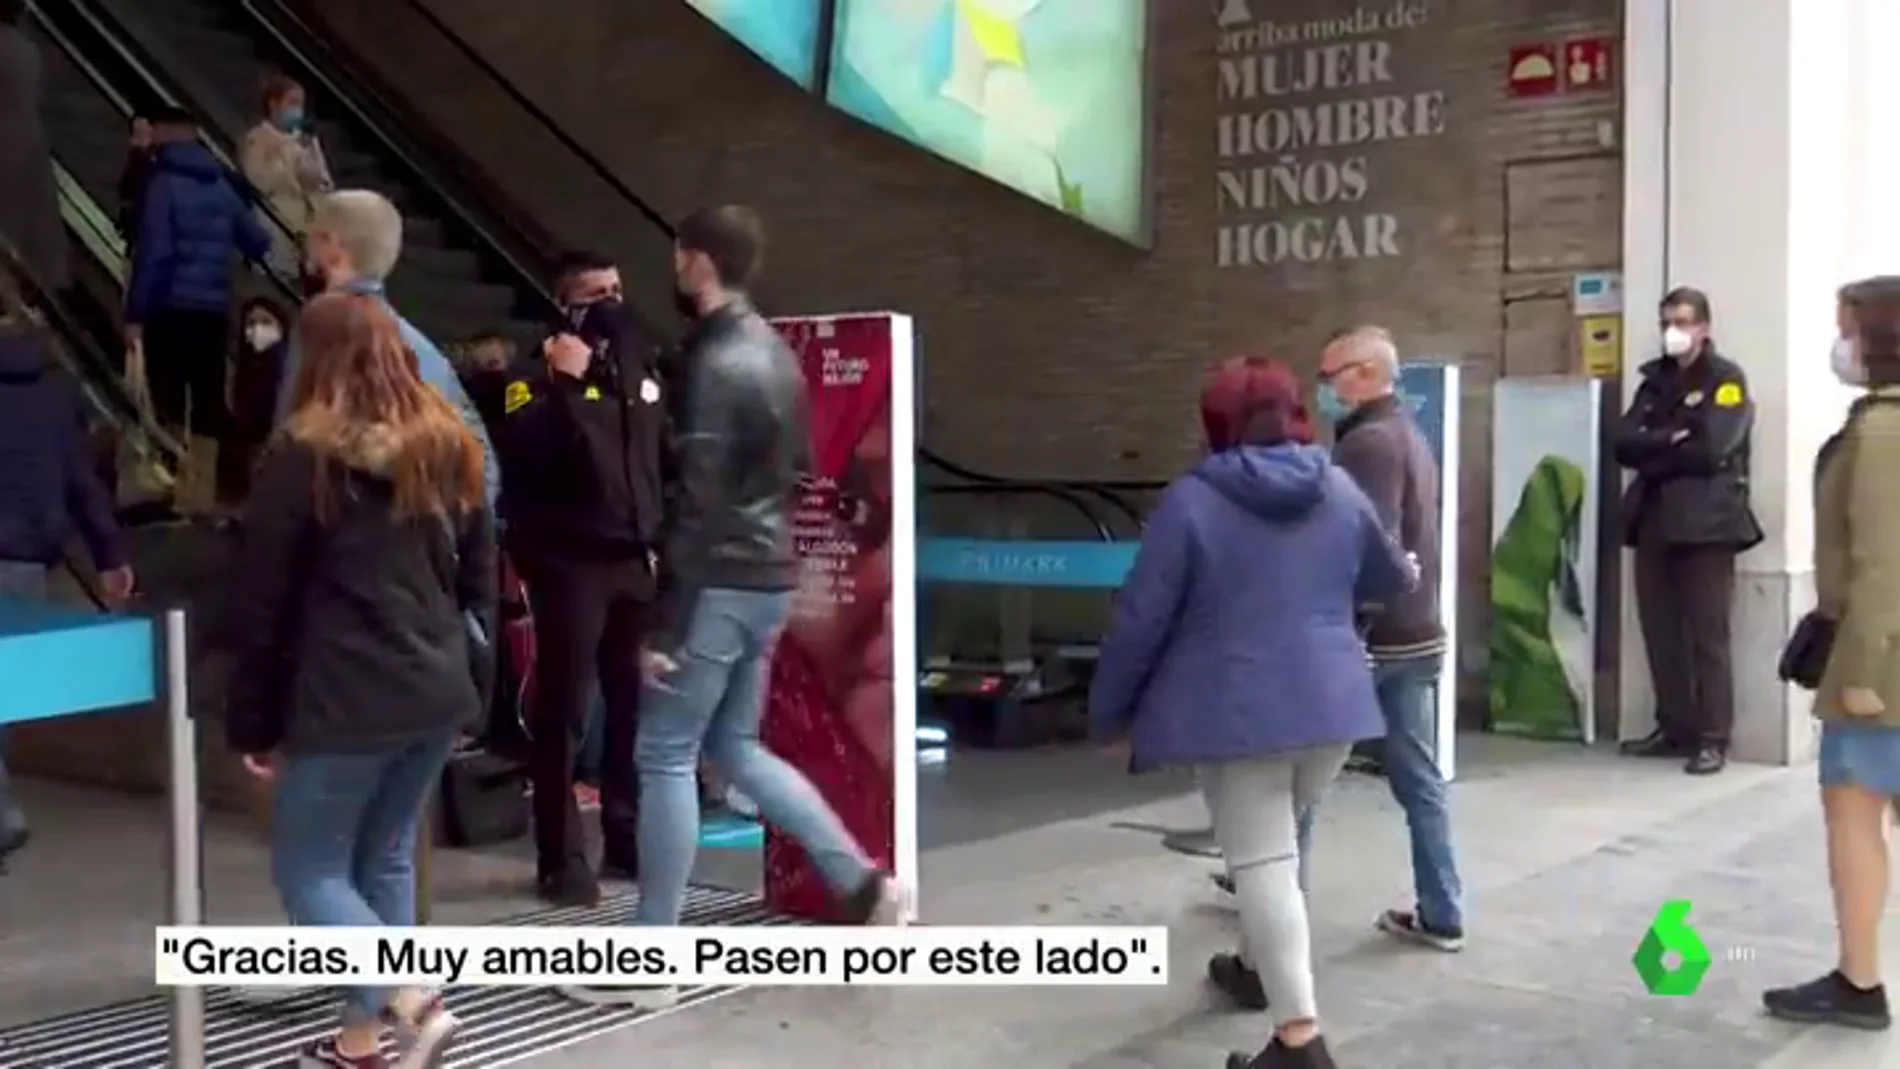 Las compras sobreviven a las restricciones en Madrid: “Hay hasta turistas, no entiendo”